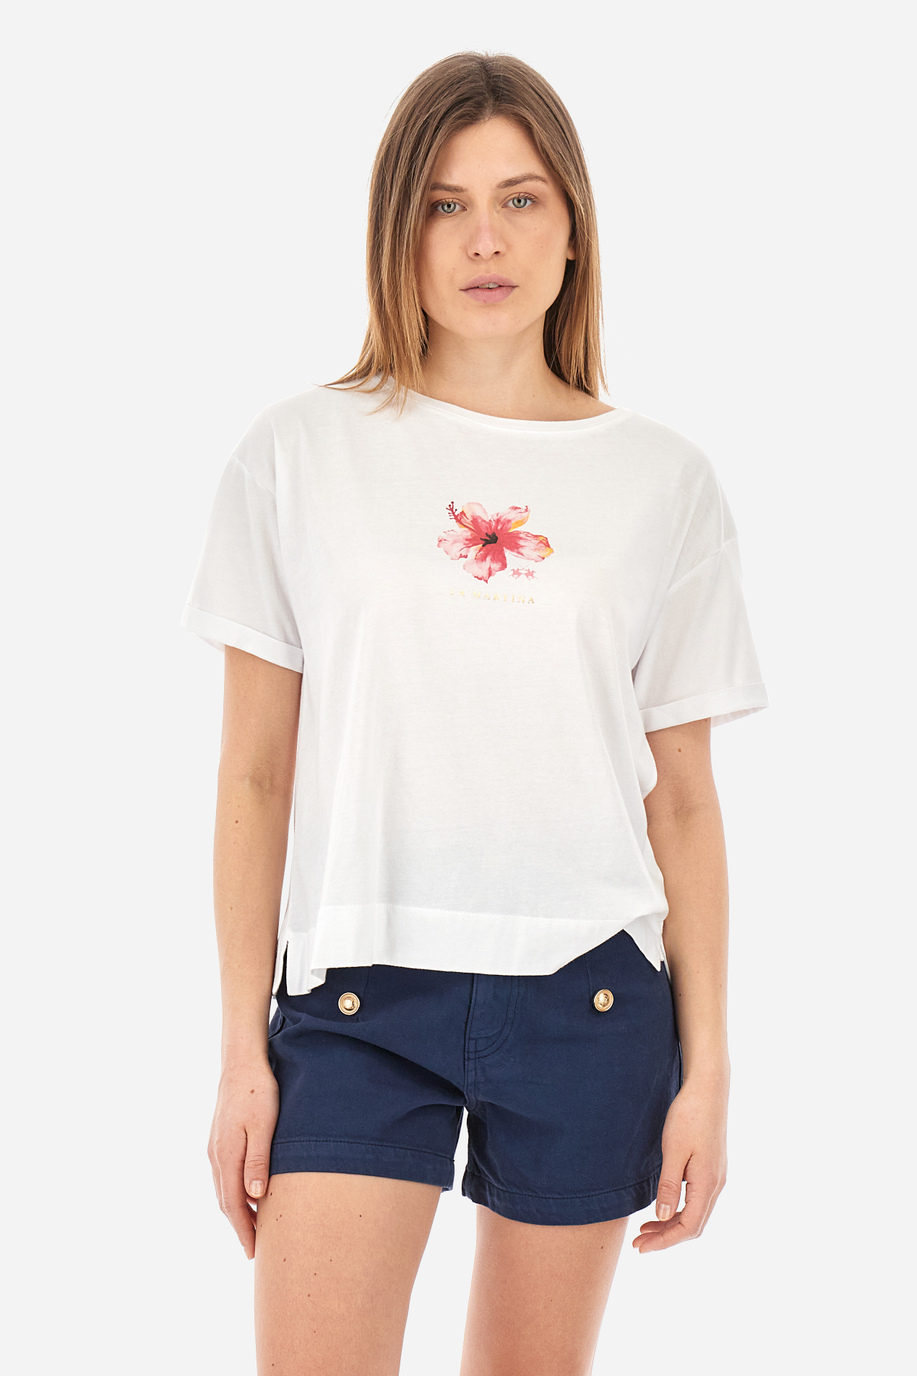 Remera de algodón de corte recto - Yesenia - Camisetas | La Martina - Official Online Shop